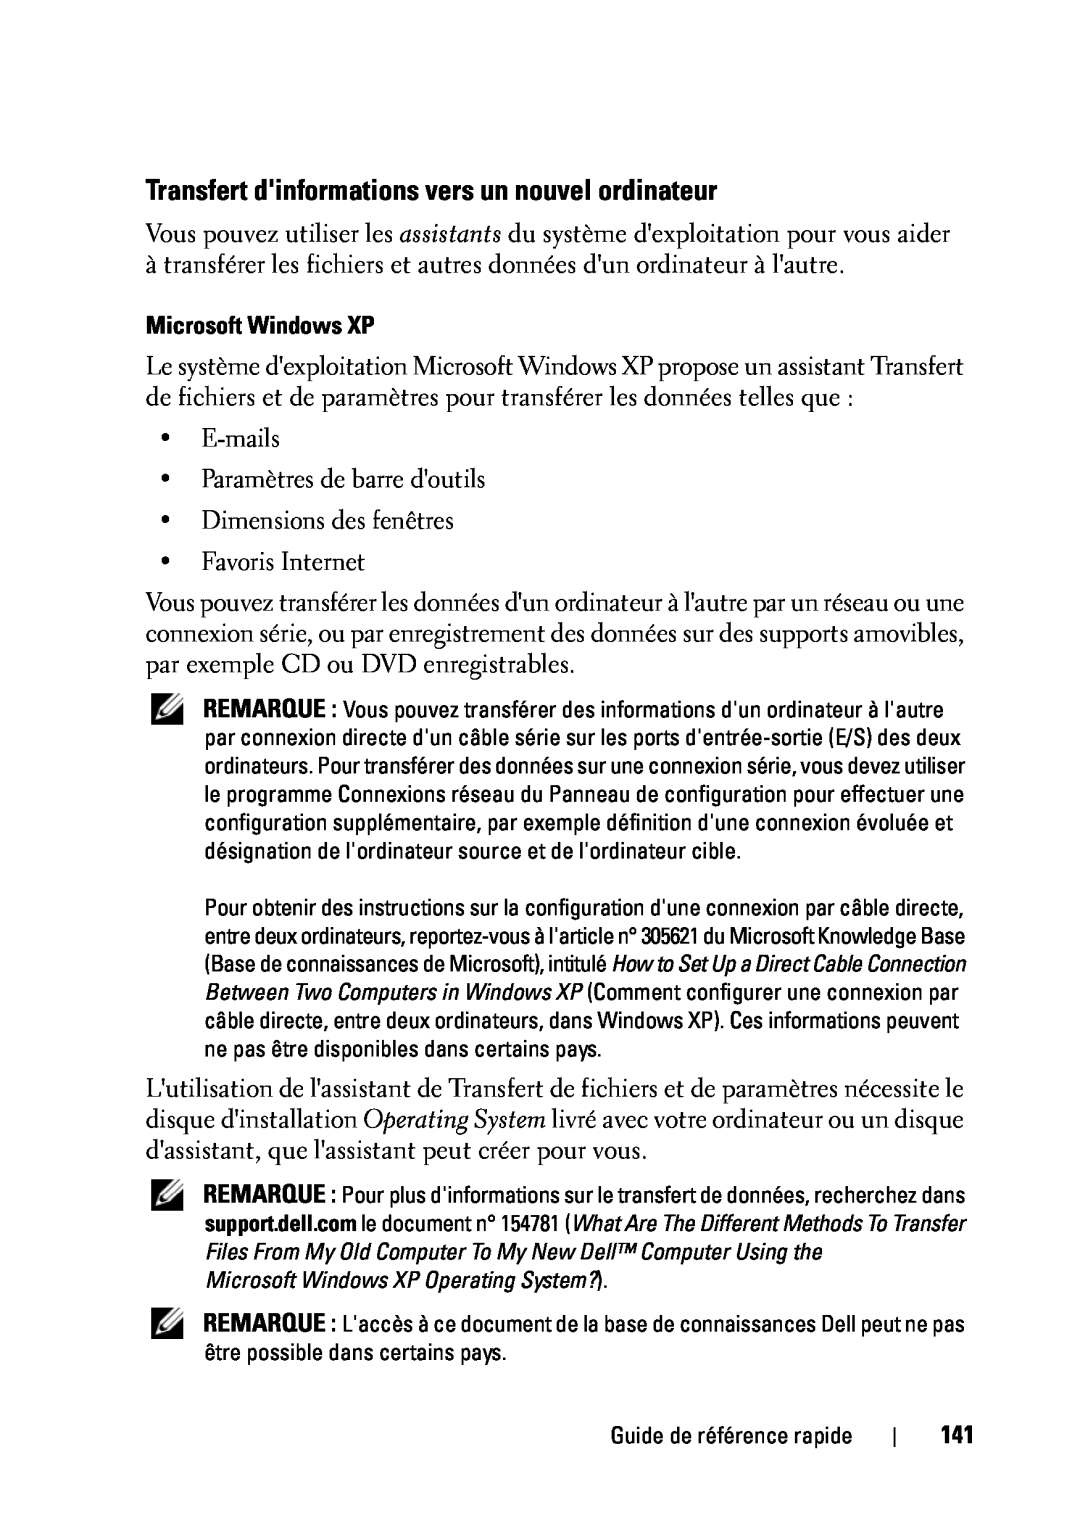 Dell T5400 manual Transfert dinformations vers un nouvel ordinateur, Microsoft Windows XP 